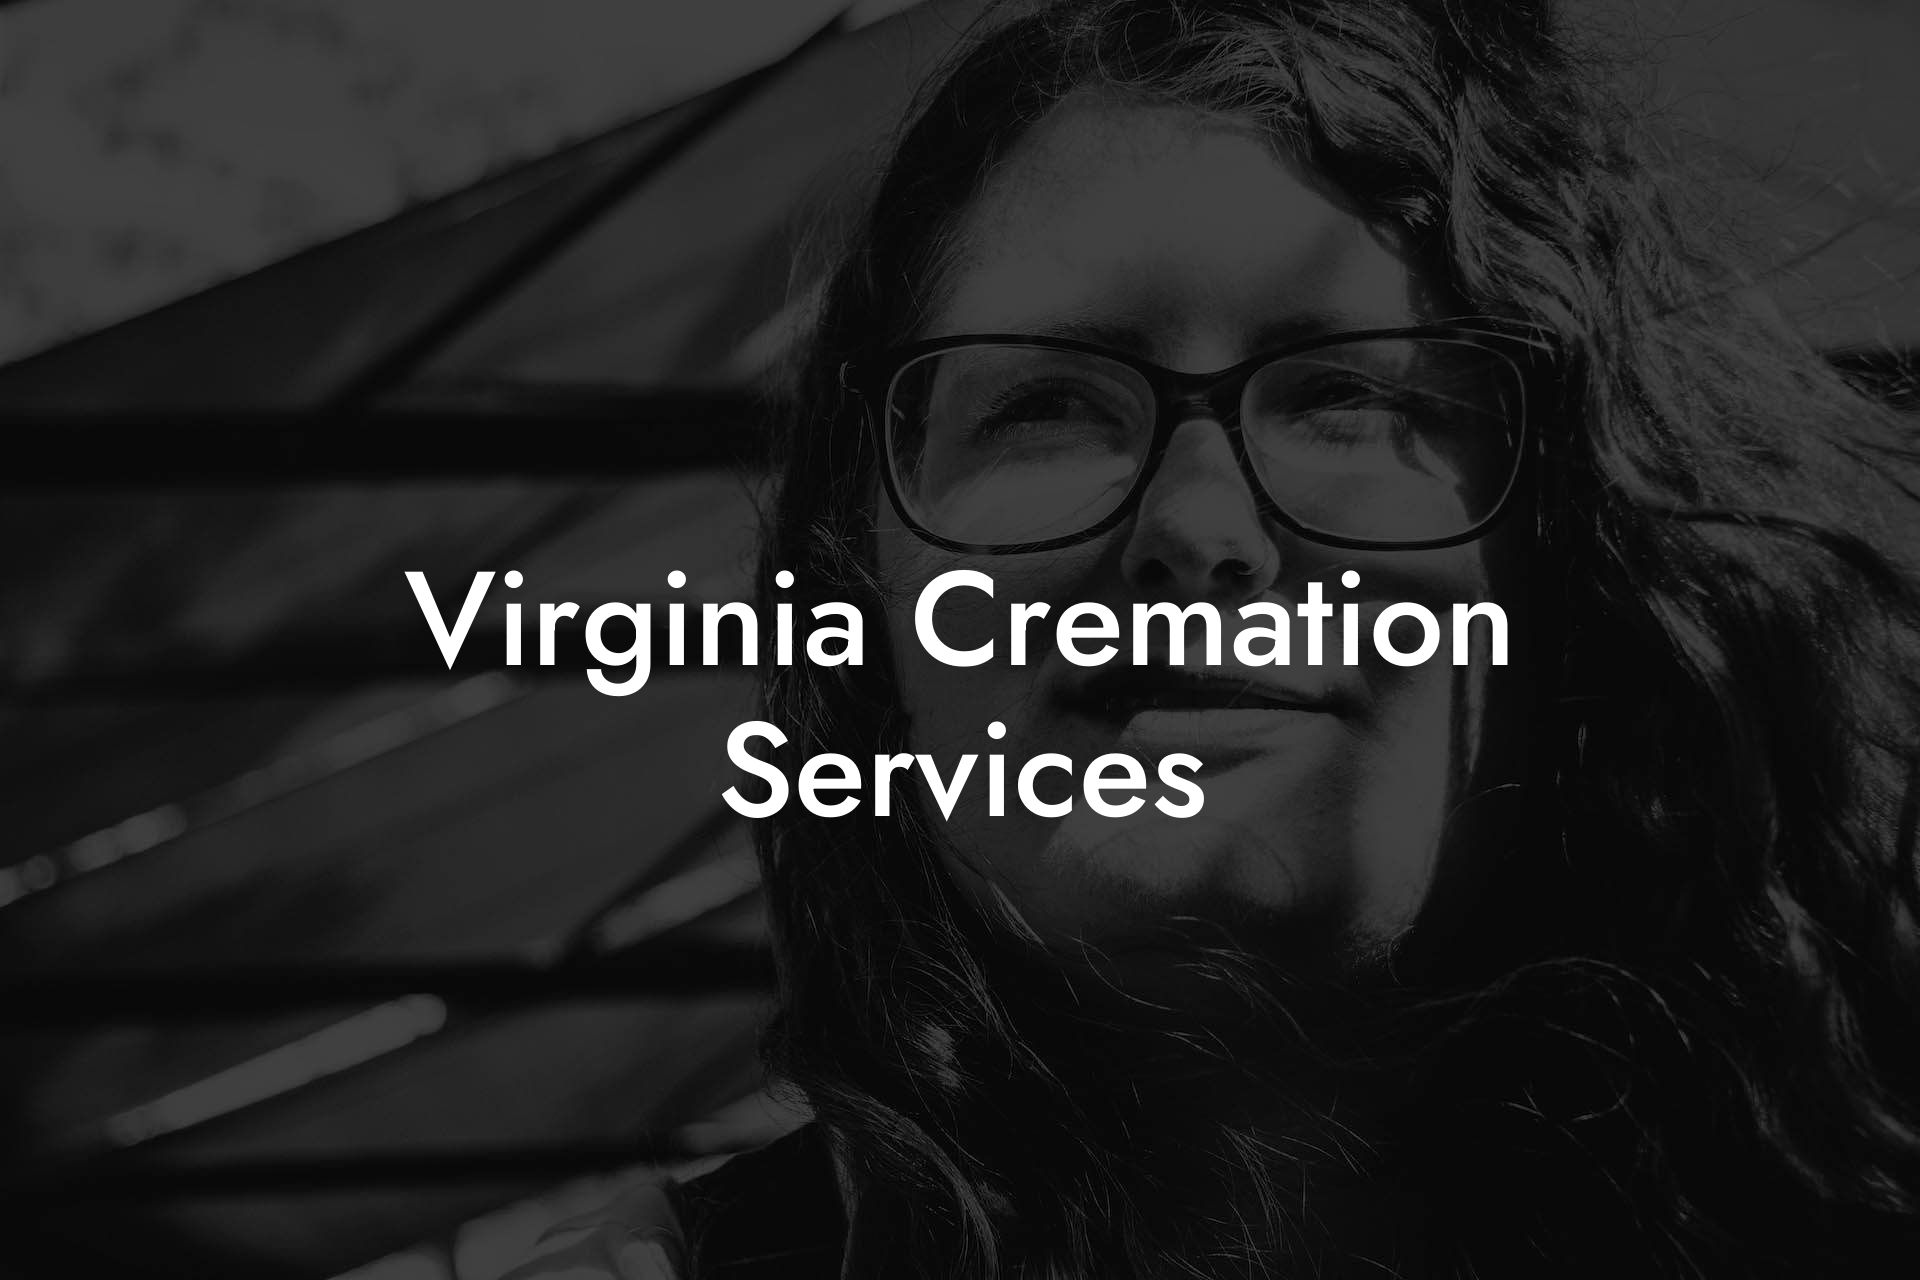 Virginia Cremation Services